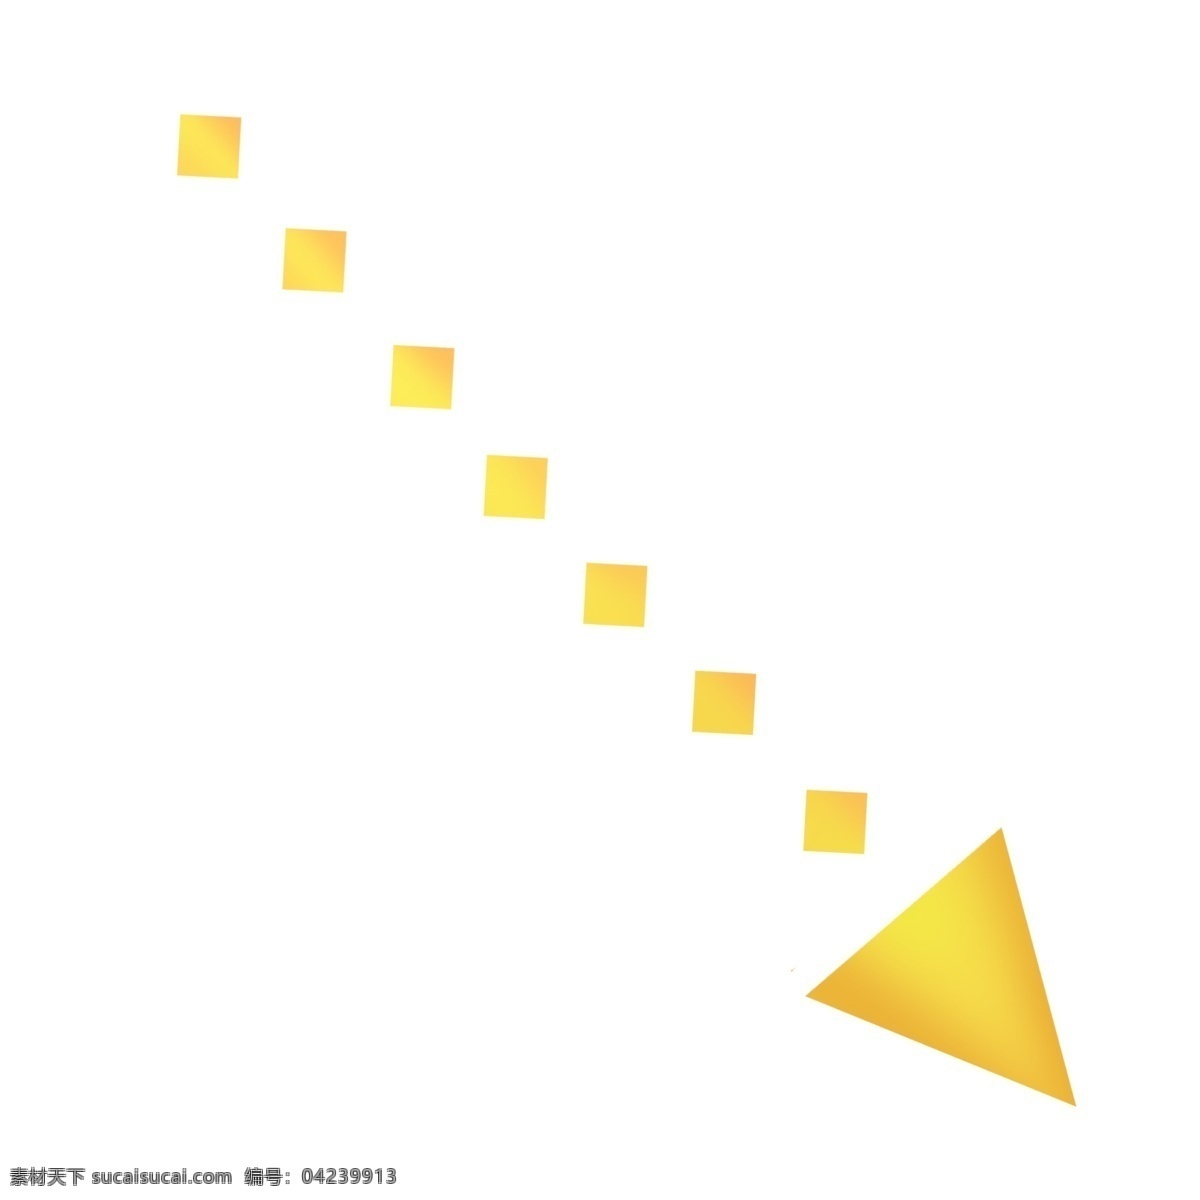 金黄色 右下 方向 点状 卡通 箭头 黄色 金黄色箭头 黄色箭头 右下方向 右下箭头 点状箭头